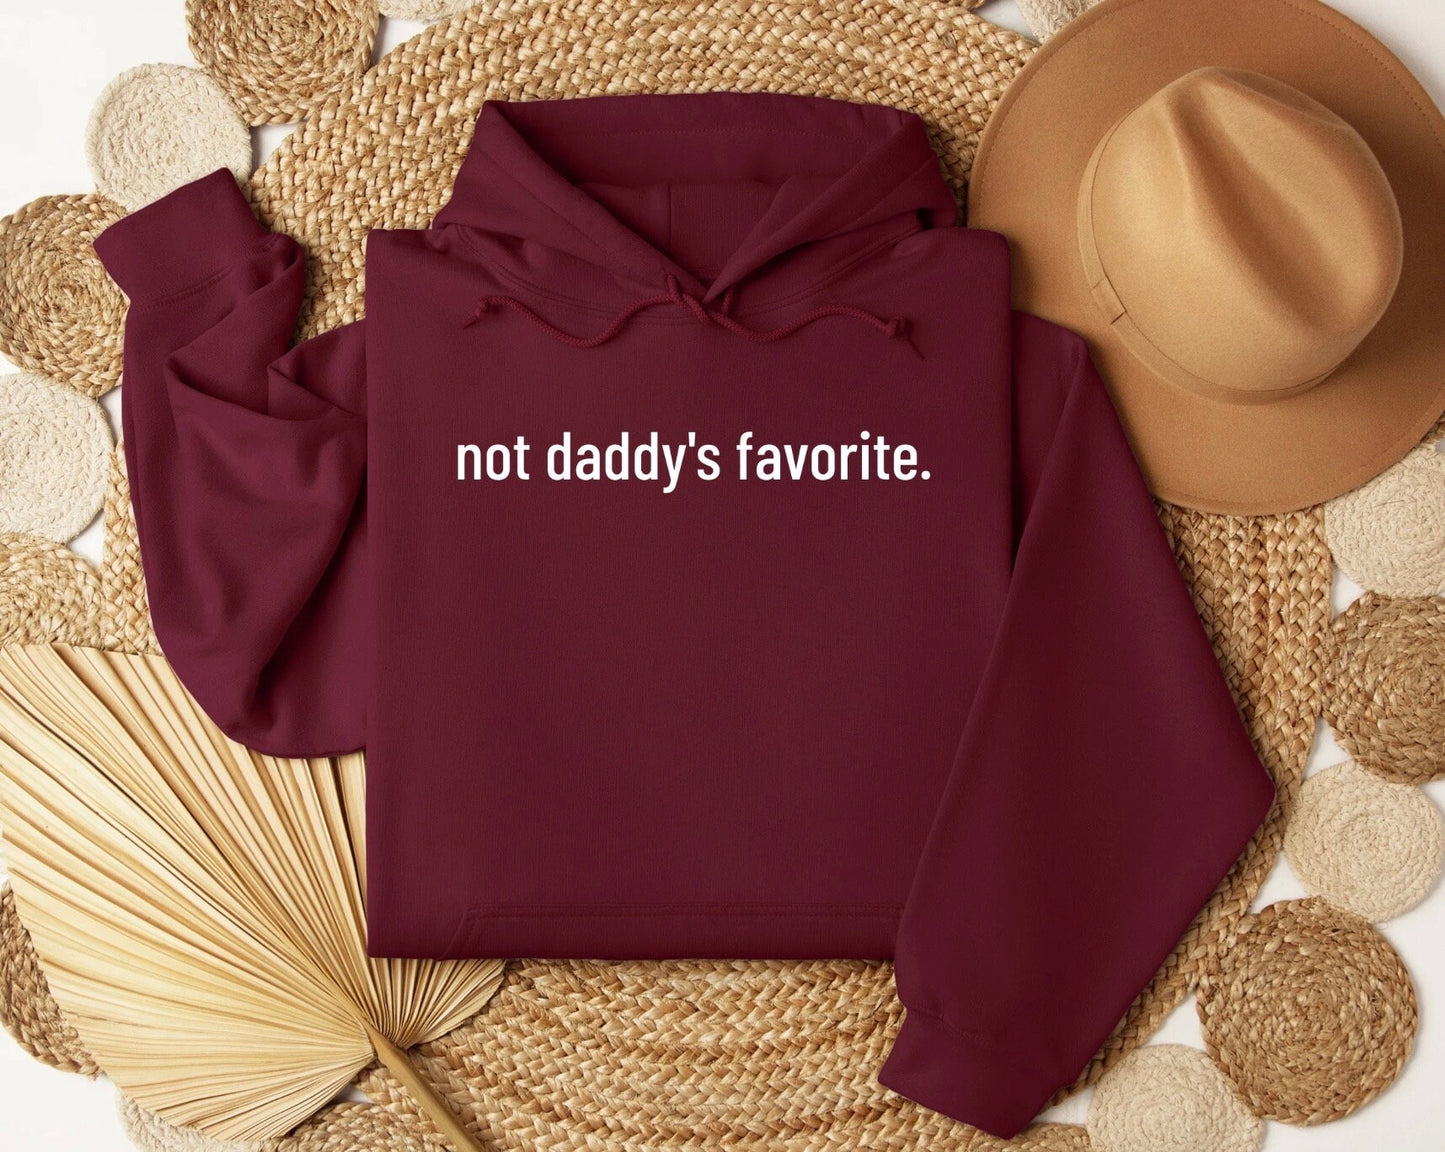 Not Daddys Favorite Sweatshirt,Not Daddys Favorite Shirt, Not Daddys Favorite Crewneck, Not Daddys Favorite Sweater, Oversize Sweater, Gift